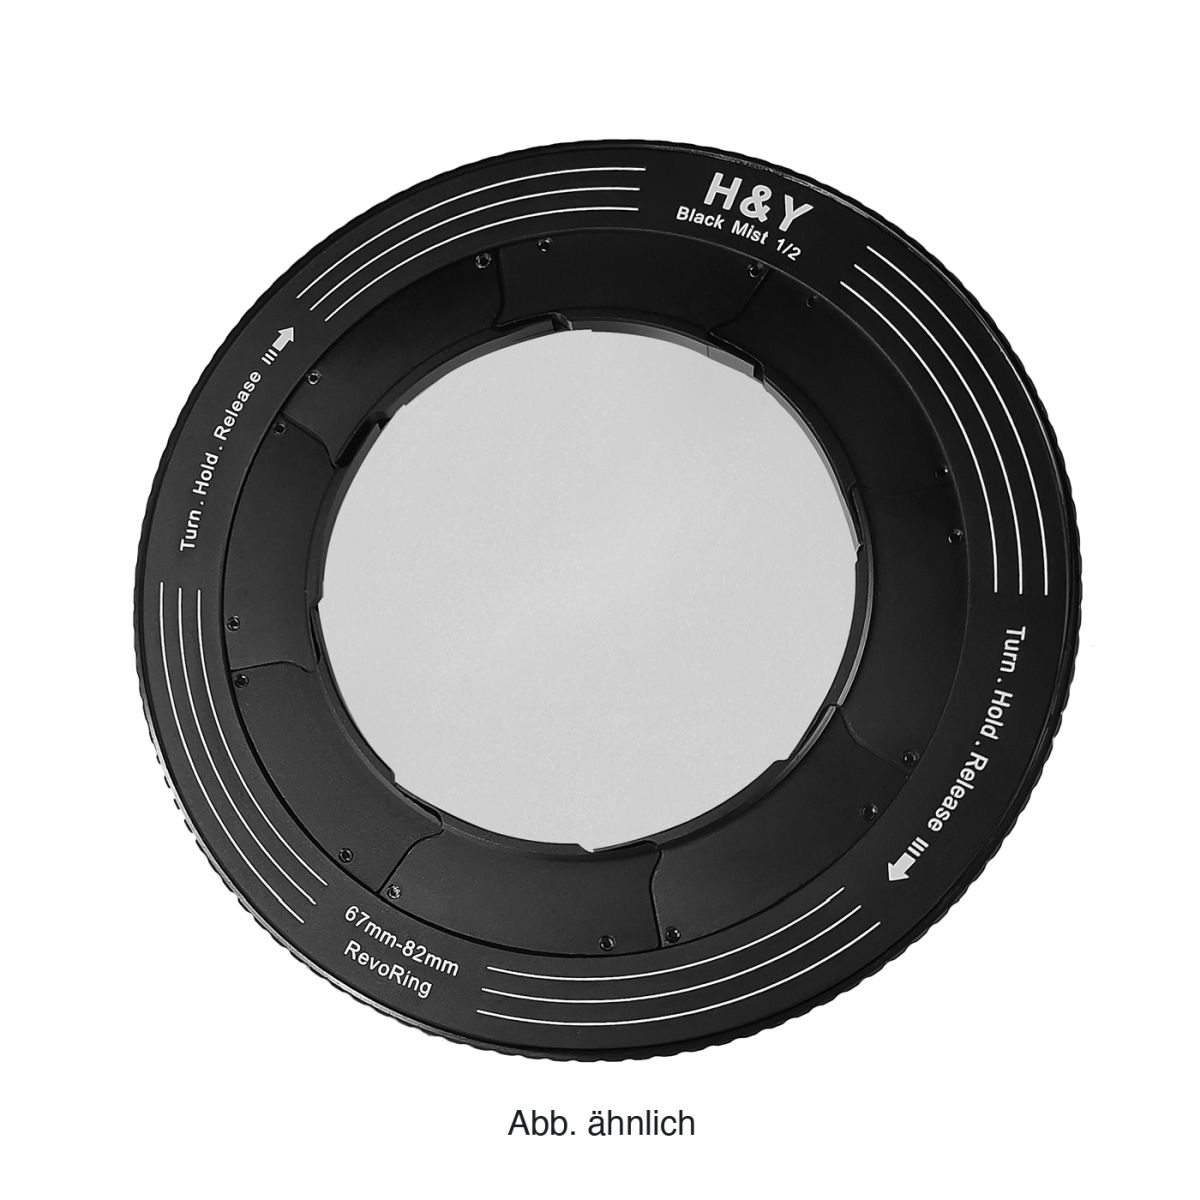 H&Y REVORING 46-62 mm Black Mist 1/2 Filter